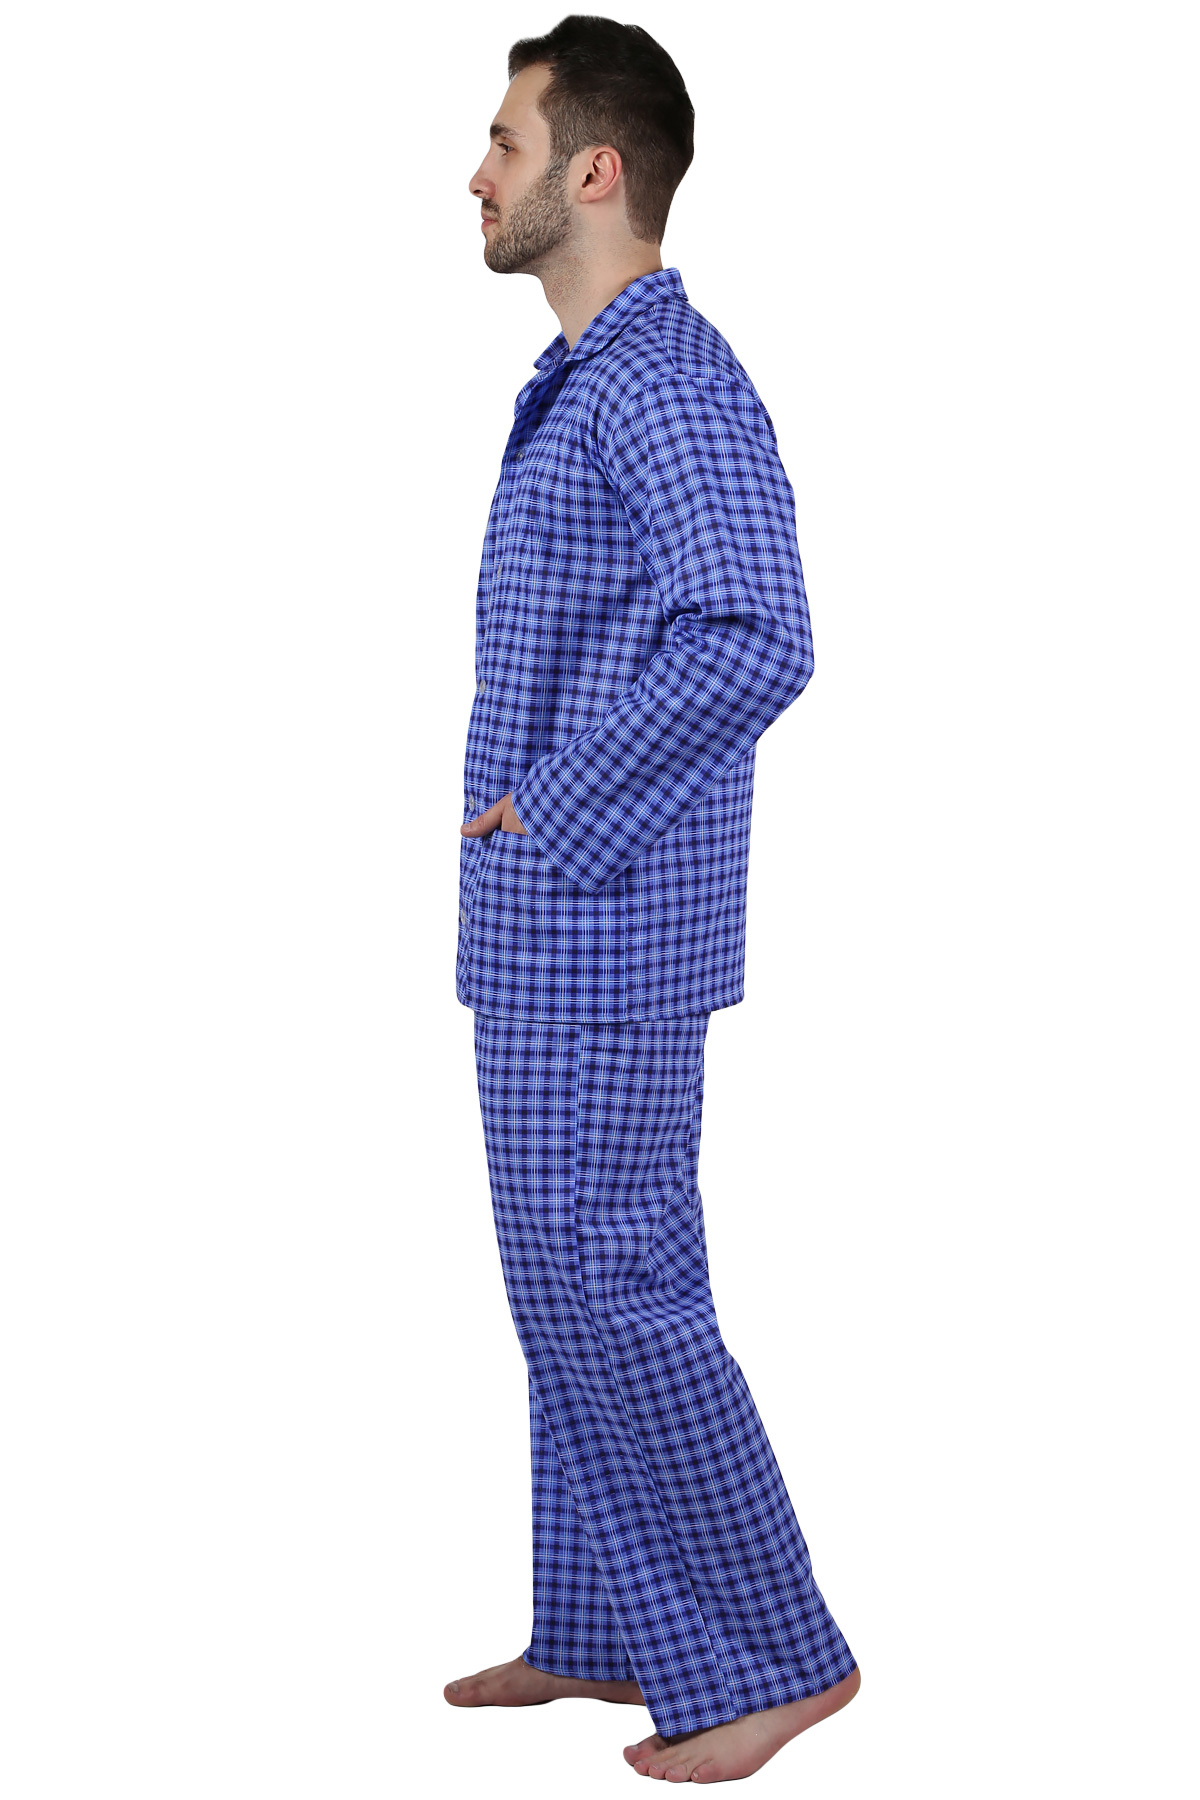 Муж. пижама арт. 22-0210 В ассортименте р. 54 Оптима трикотаж, размер 54 - фото 2